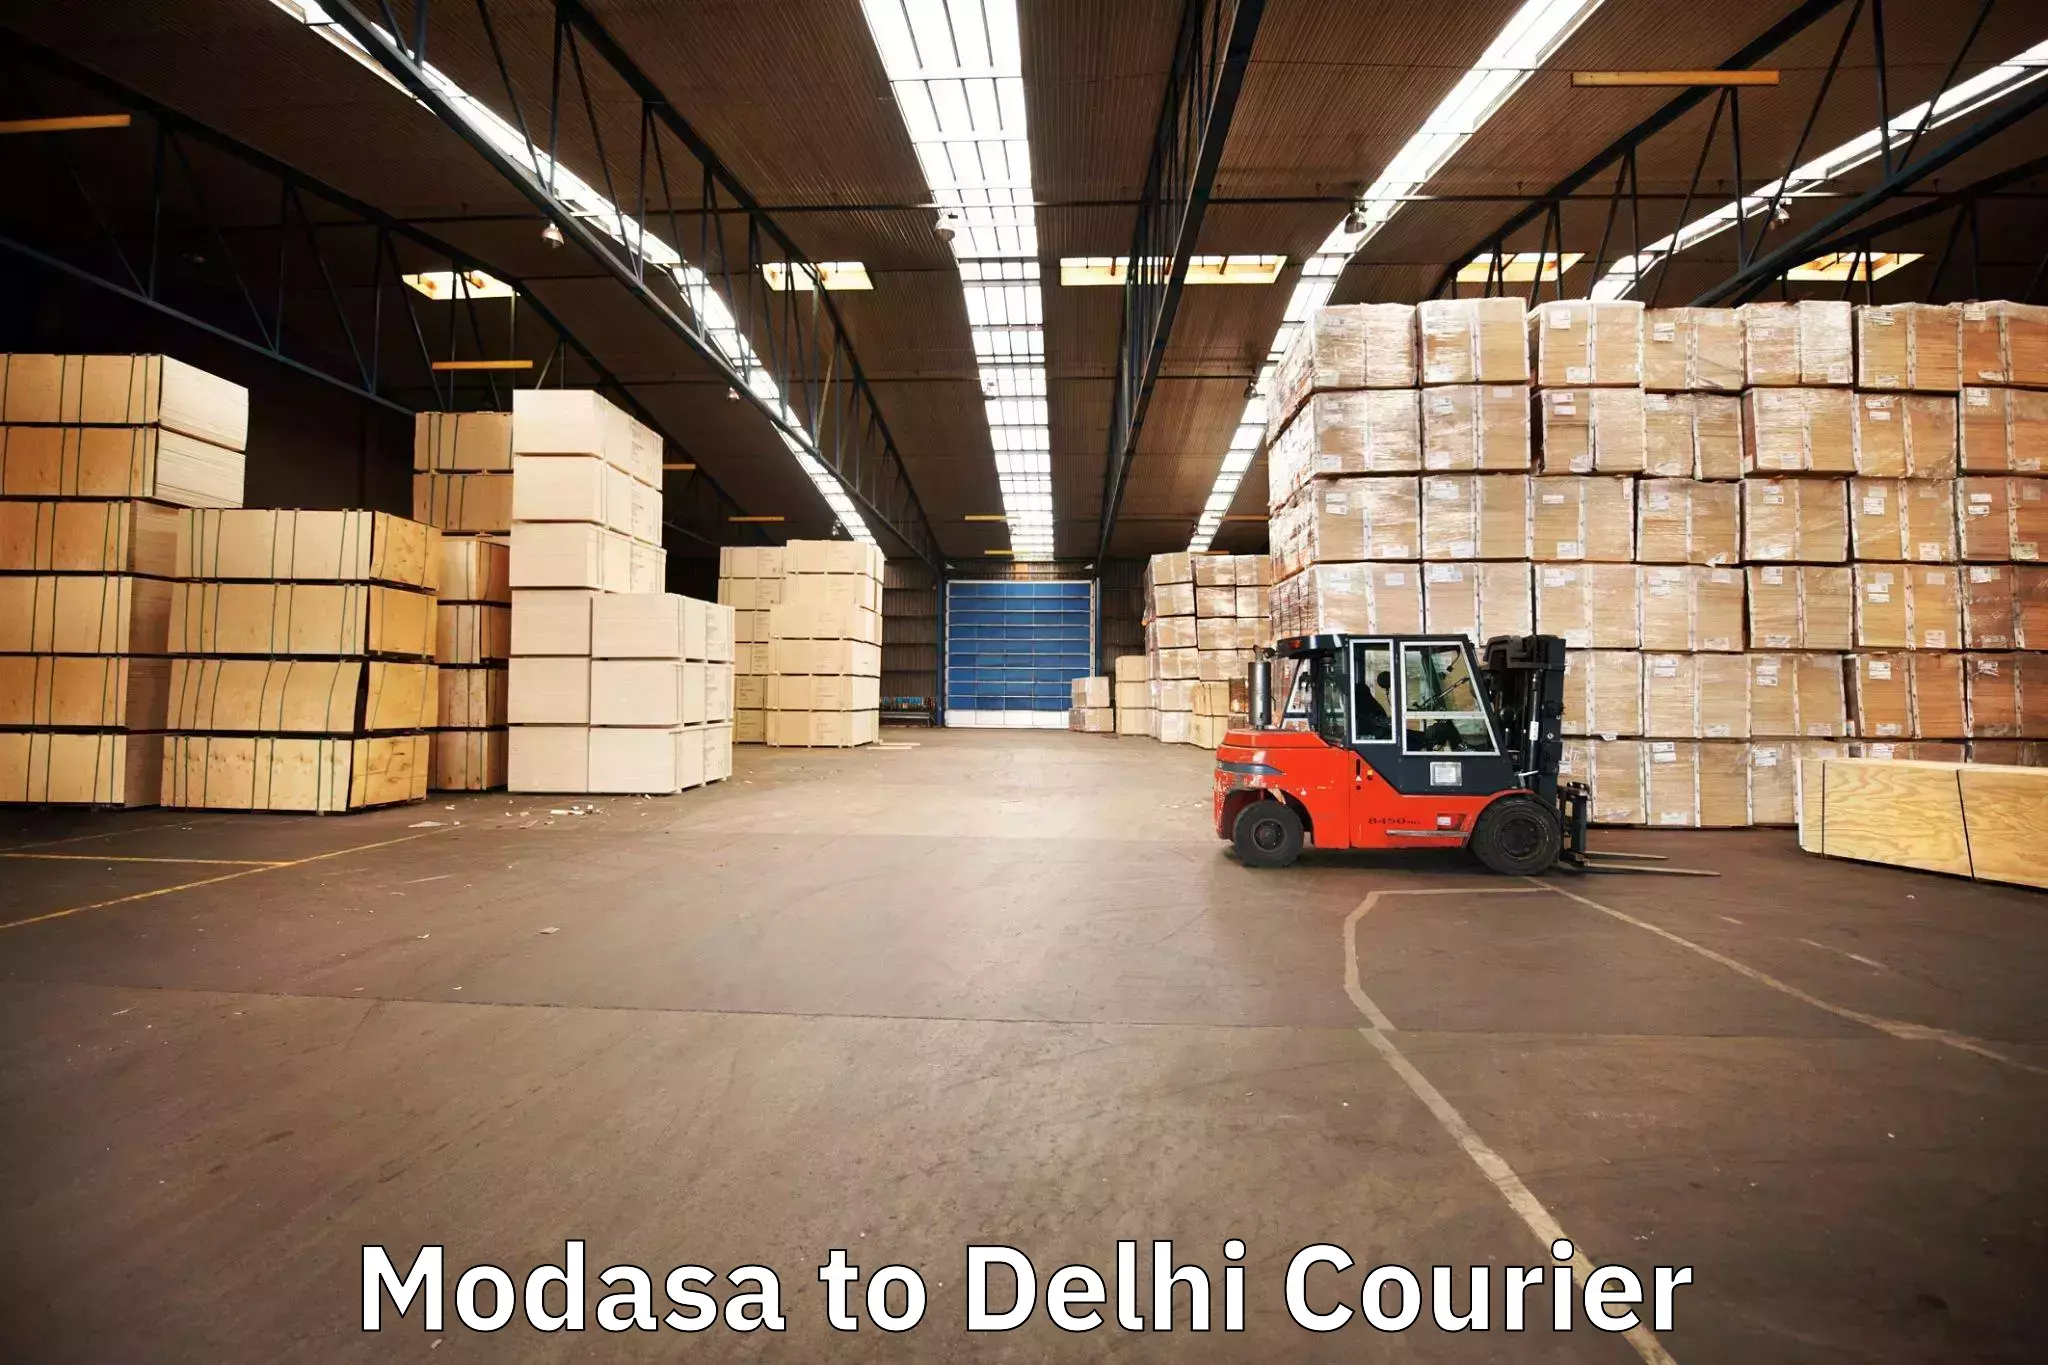 Furniture delivery service Modasa to Delhi